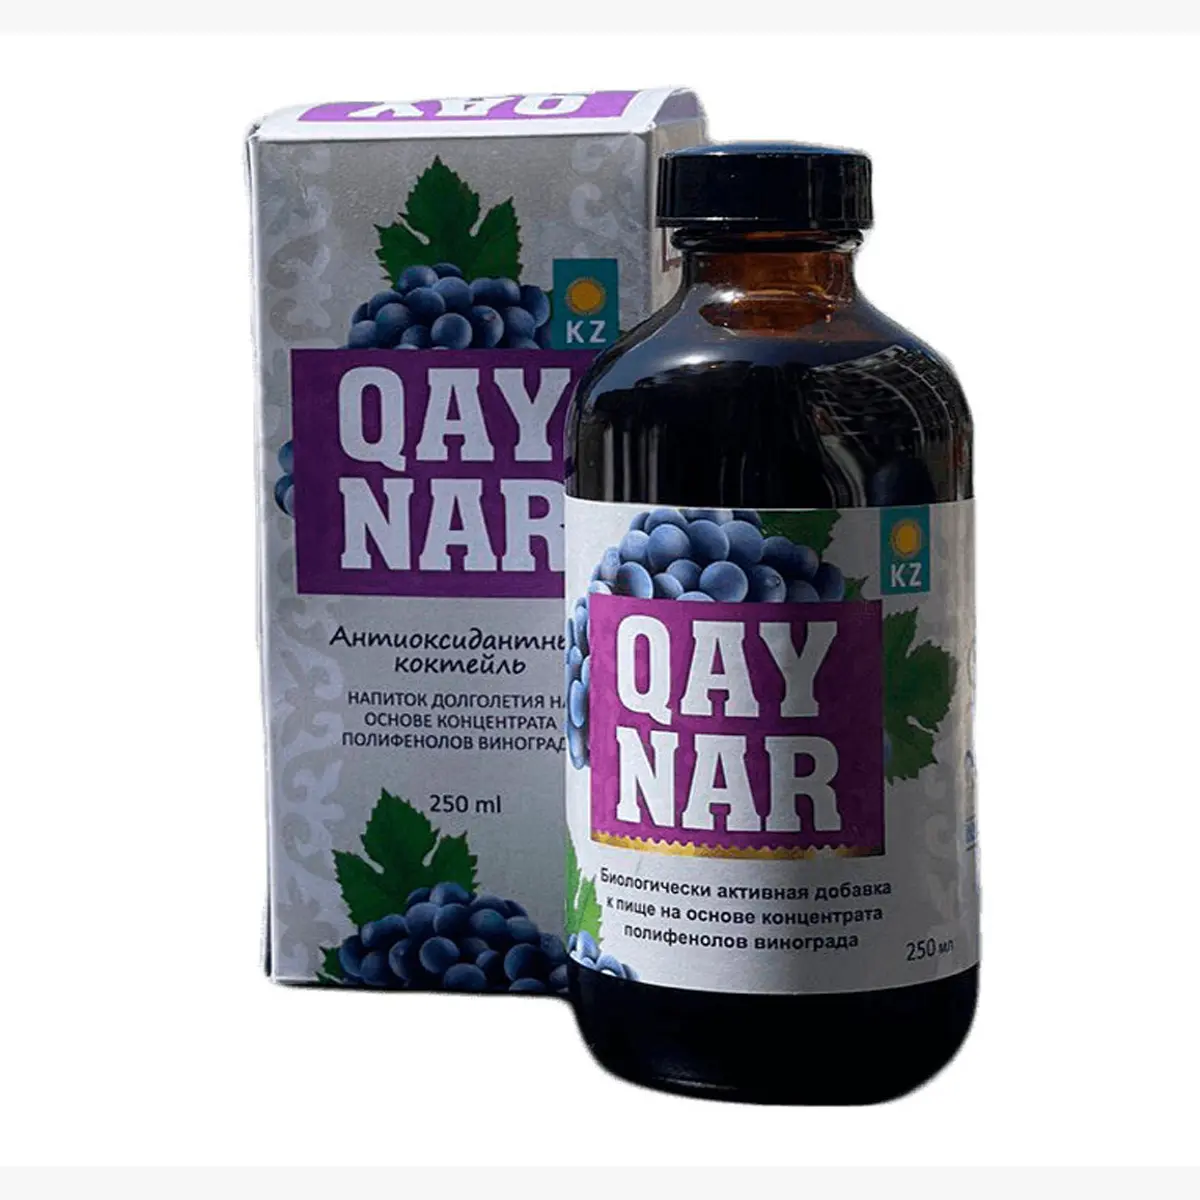 포도씨의 폴리페놀 추출물 “QAYNAR” 바이오 활성 식품 보충제는 천연 항산화 물질을 함유, 최고 품질의 제품